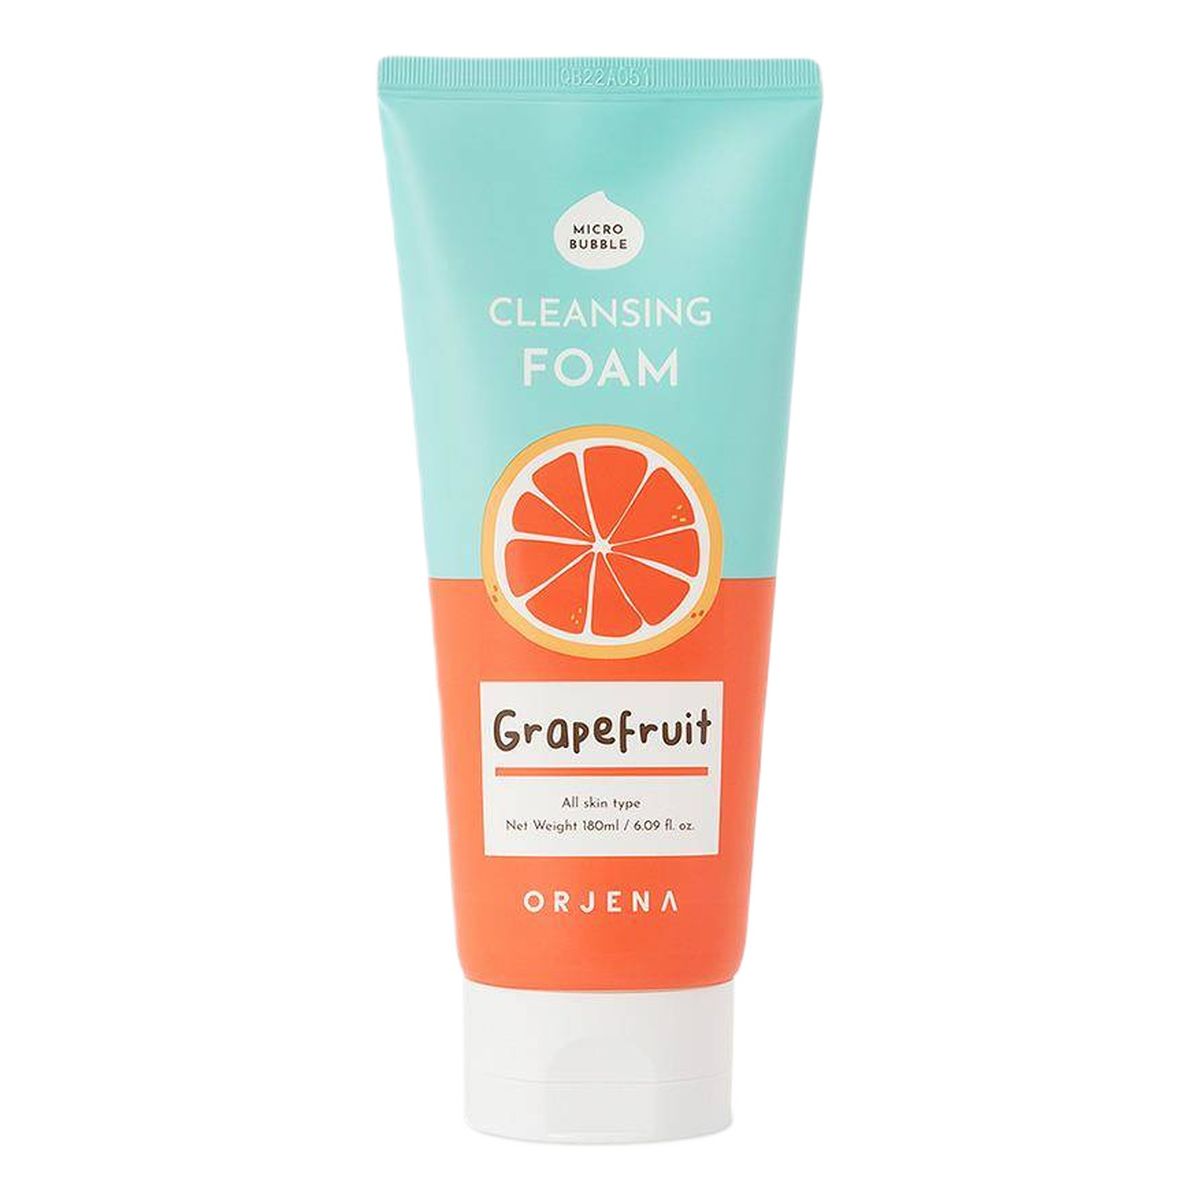 Orjena Cleansing foam grapefruit oczyszczająca pianka do mycia twarzy 180ml